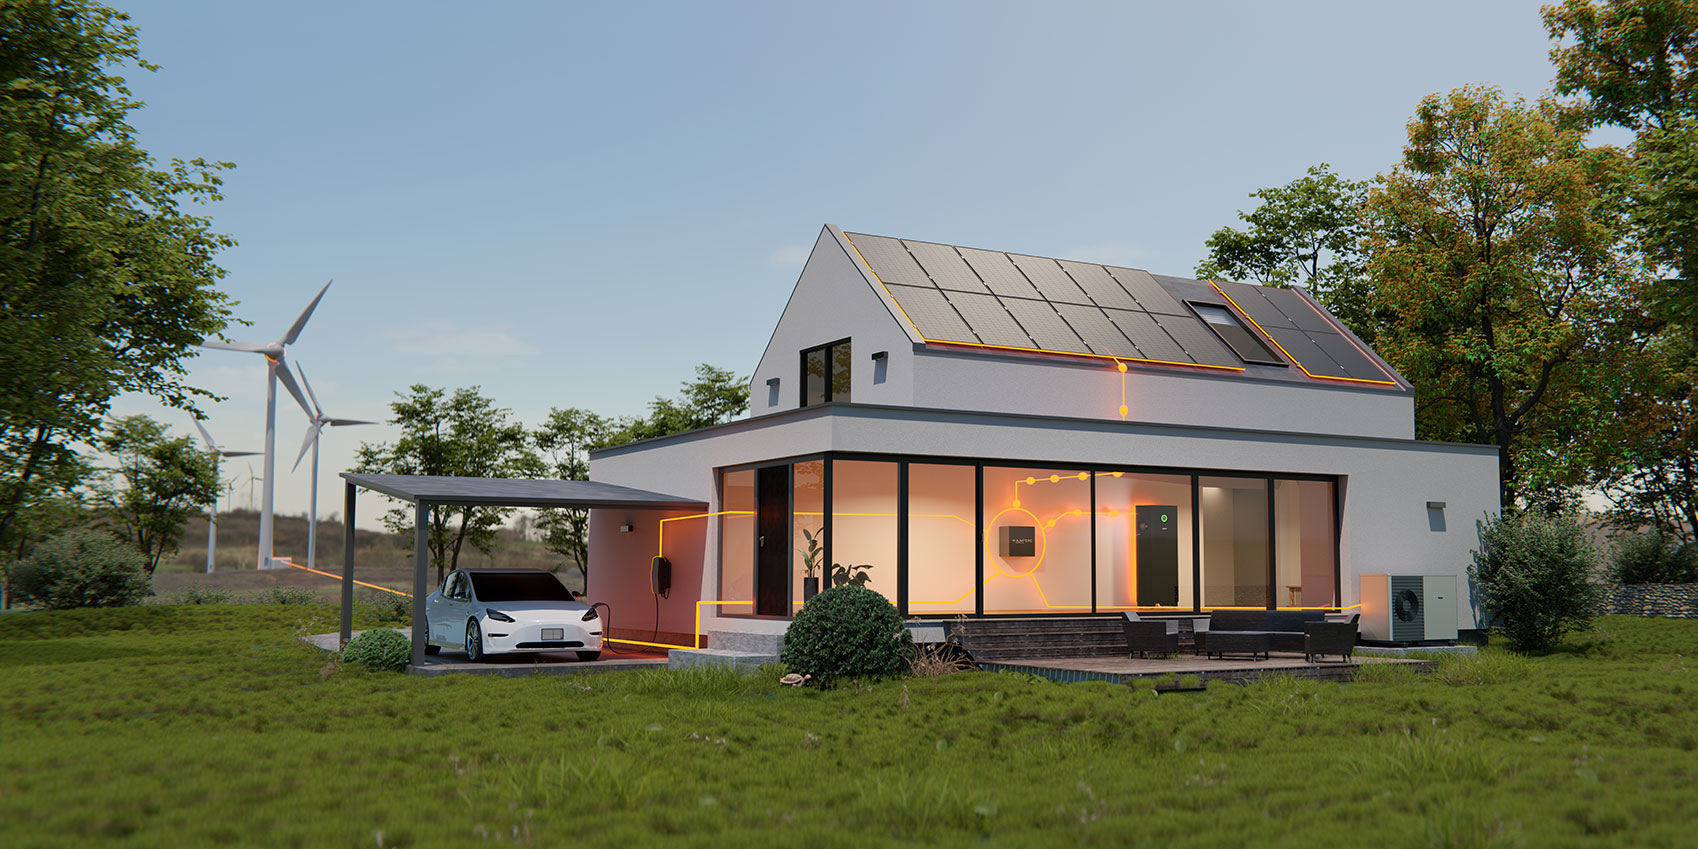 Haus und Garten mit Bäumen im Sommer - Das Haus hat ein Energiesystem. Solaranlage auf dem Dach, Speicher und Energiemanagement-System im Haus, Wärmepumpe vor dem Haus. Das Auto im Carport lädt an der Wallbox. Alle Komponenten sind mit orangenen Energieflusslinien verbunden.